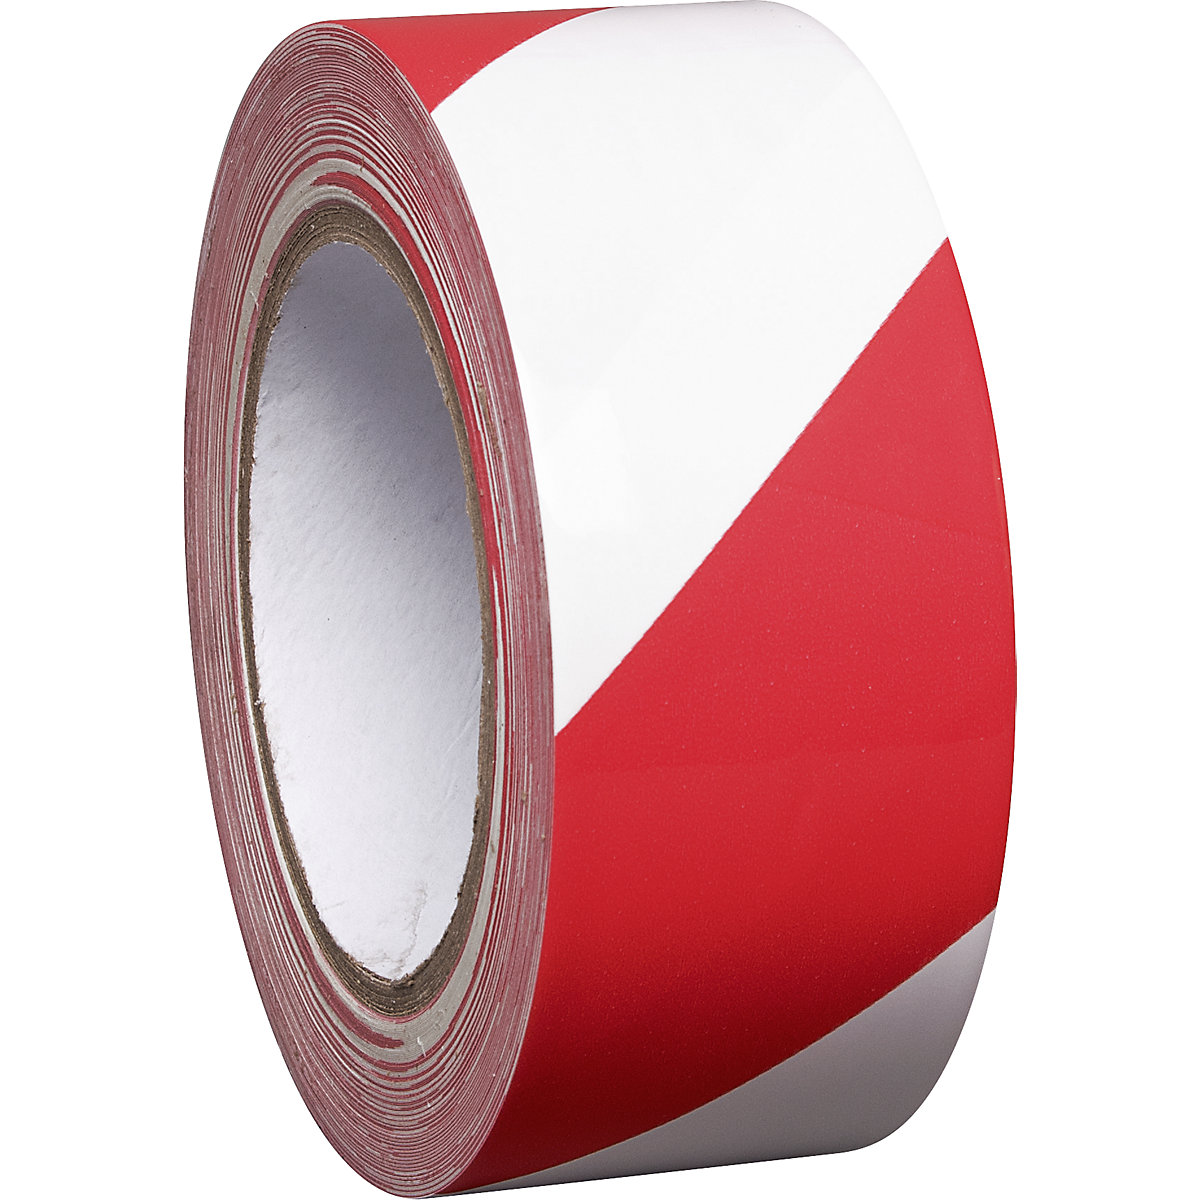 Talajjelölő szalag vinilből, kétszínű, szélesség 50 mm, piros / fehér, cs.e. 8 tekercs-2